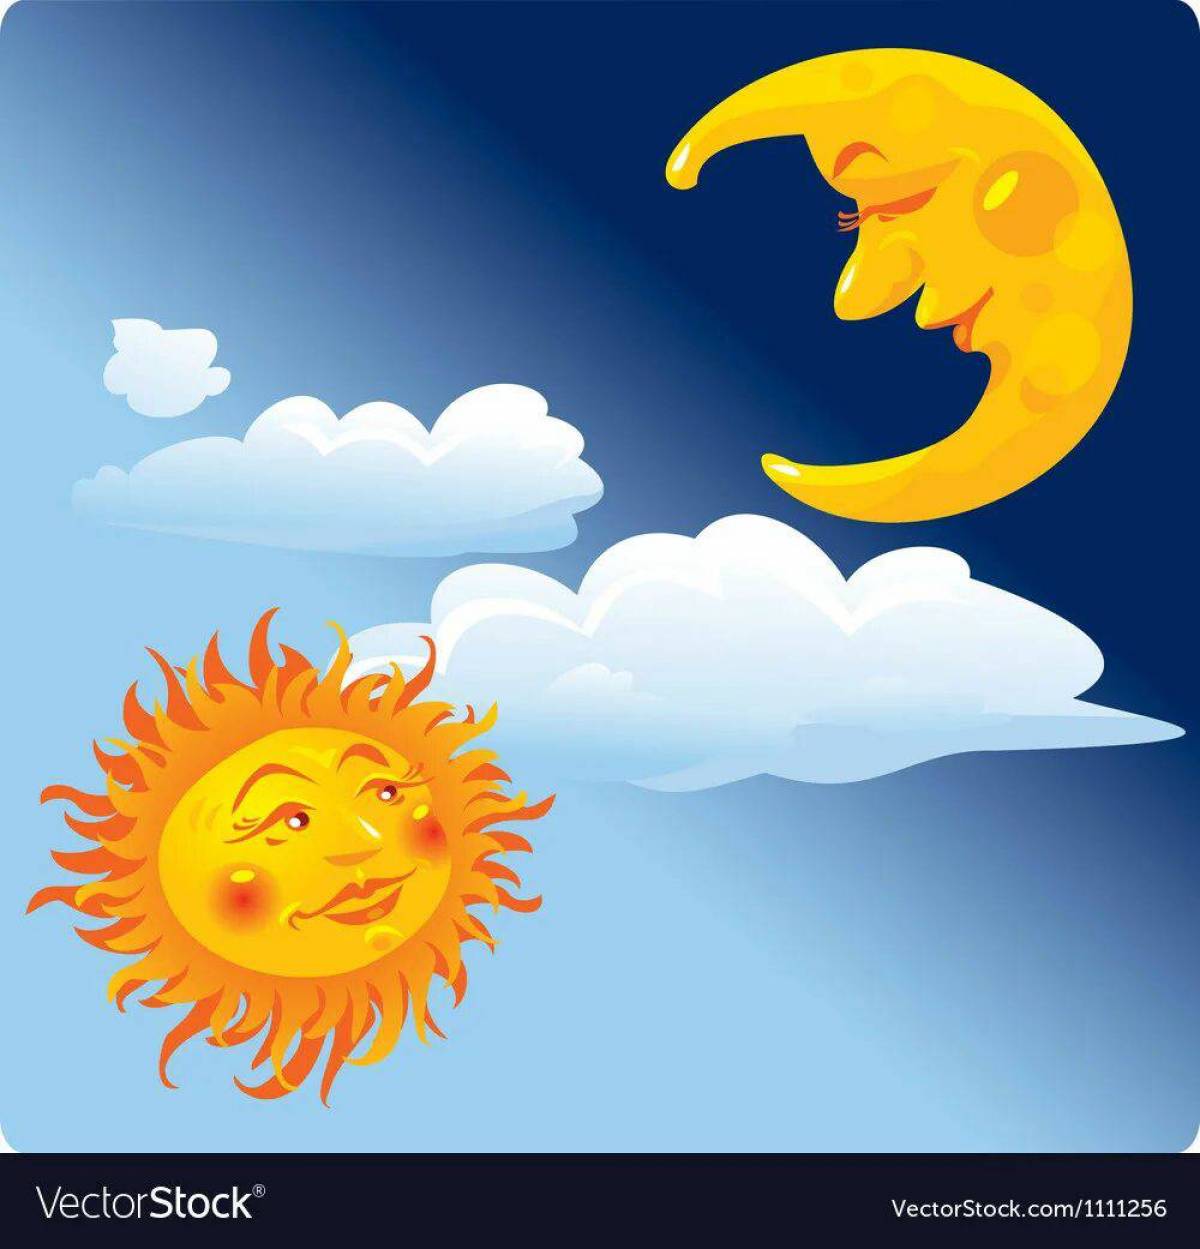 Луна и солнце для детей #8